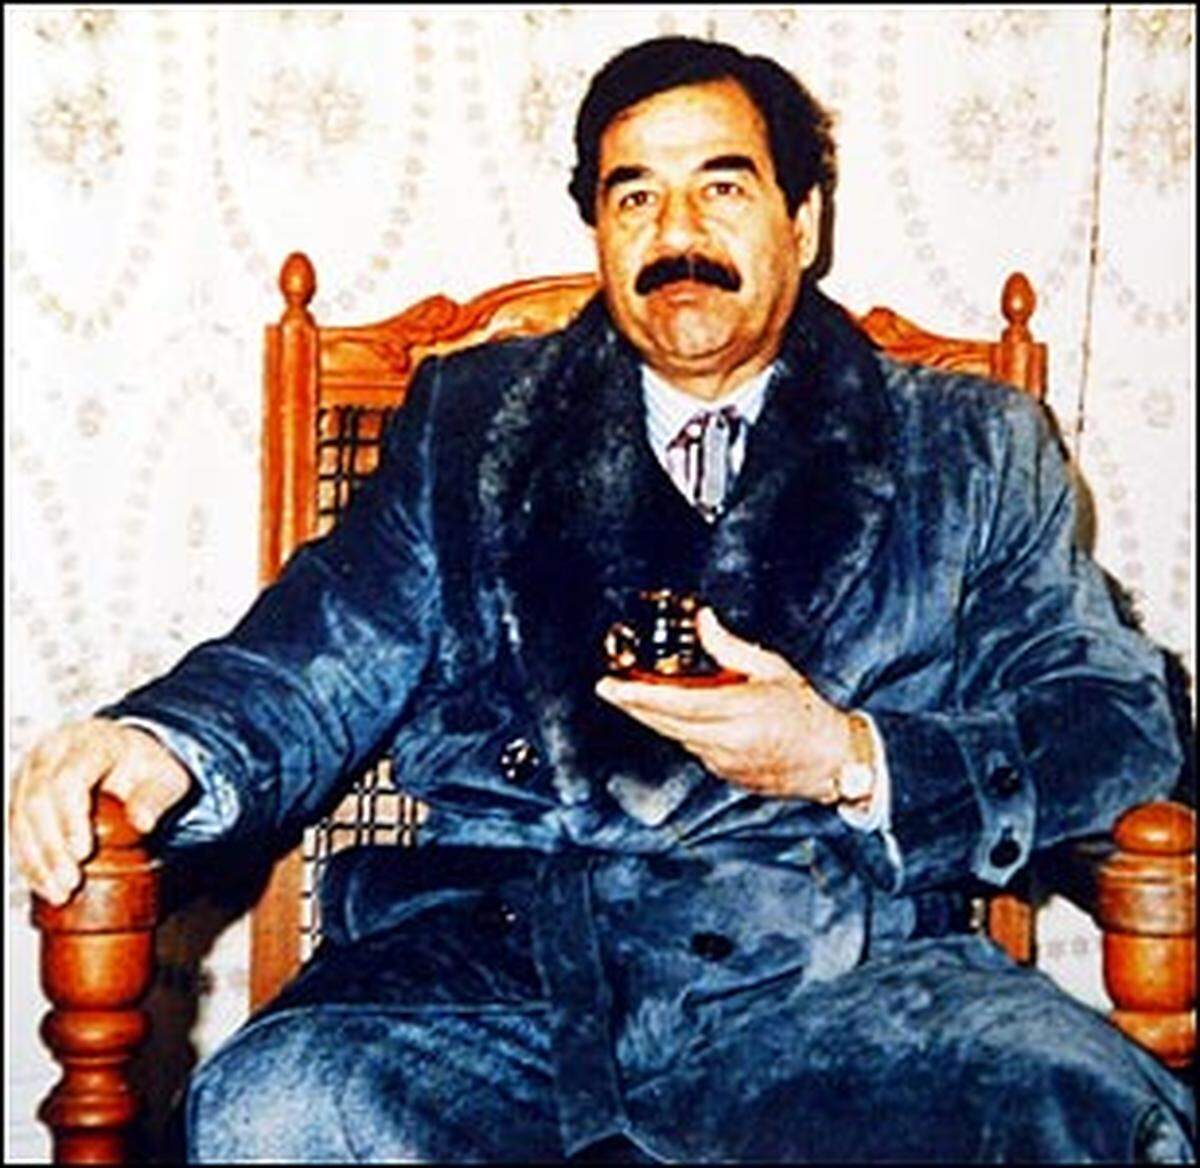 Bereits mit ihrem ersten Luftangriff auf Bagdad hatten die USA versucht, Saddam zu töten. Saddam entging jedoch diesem Schlag und verschwand erst mit dem Einmarsch von US-Truppen in der irakischen Hauptstadt Bagdad aus der Öffentlichkeit.